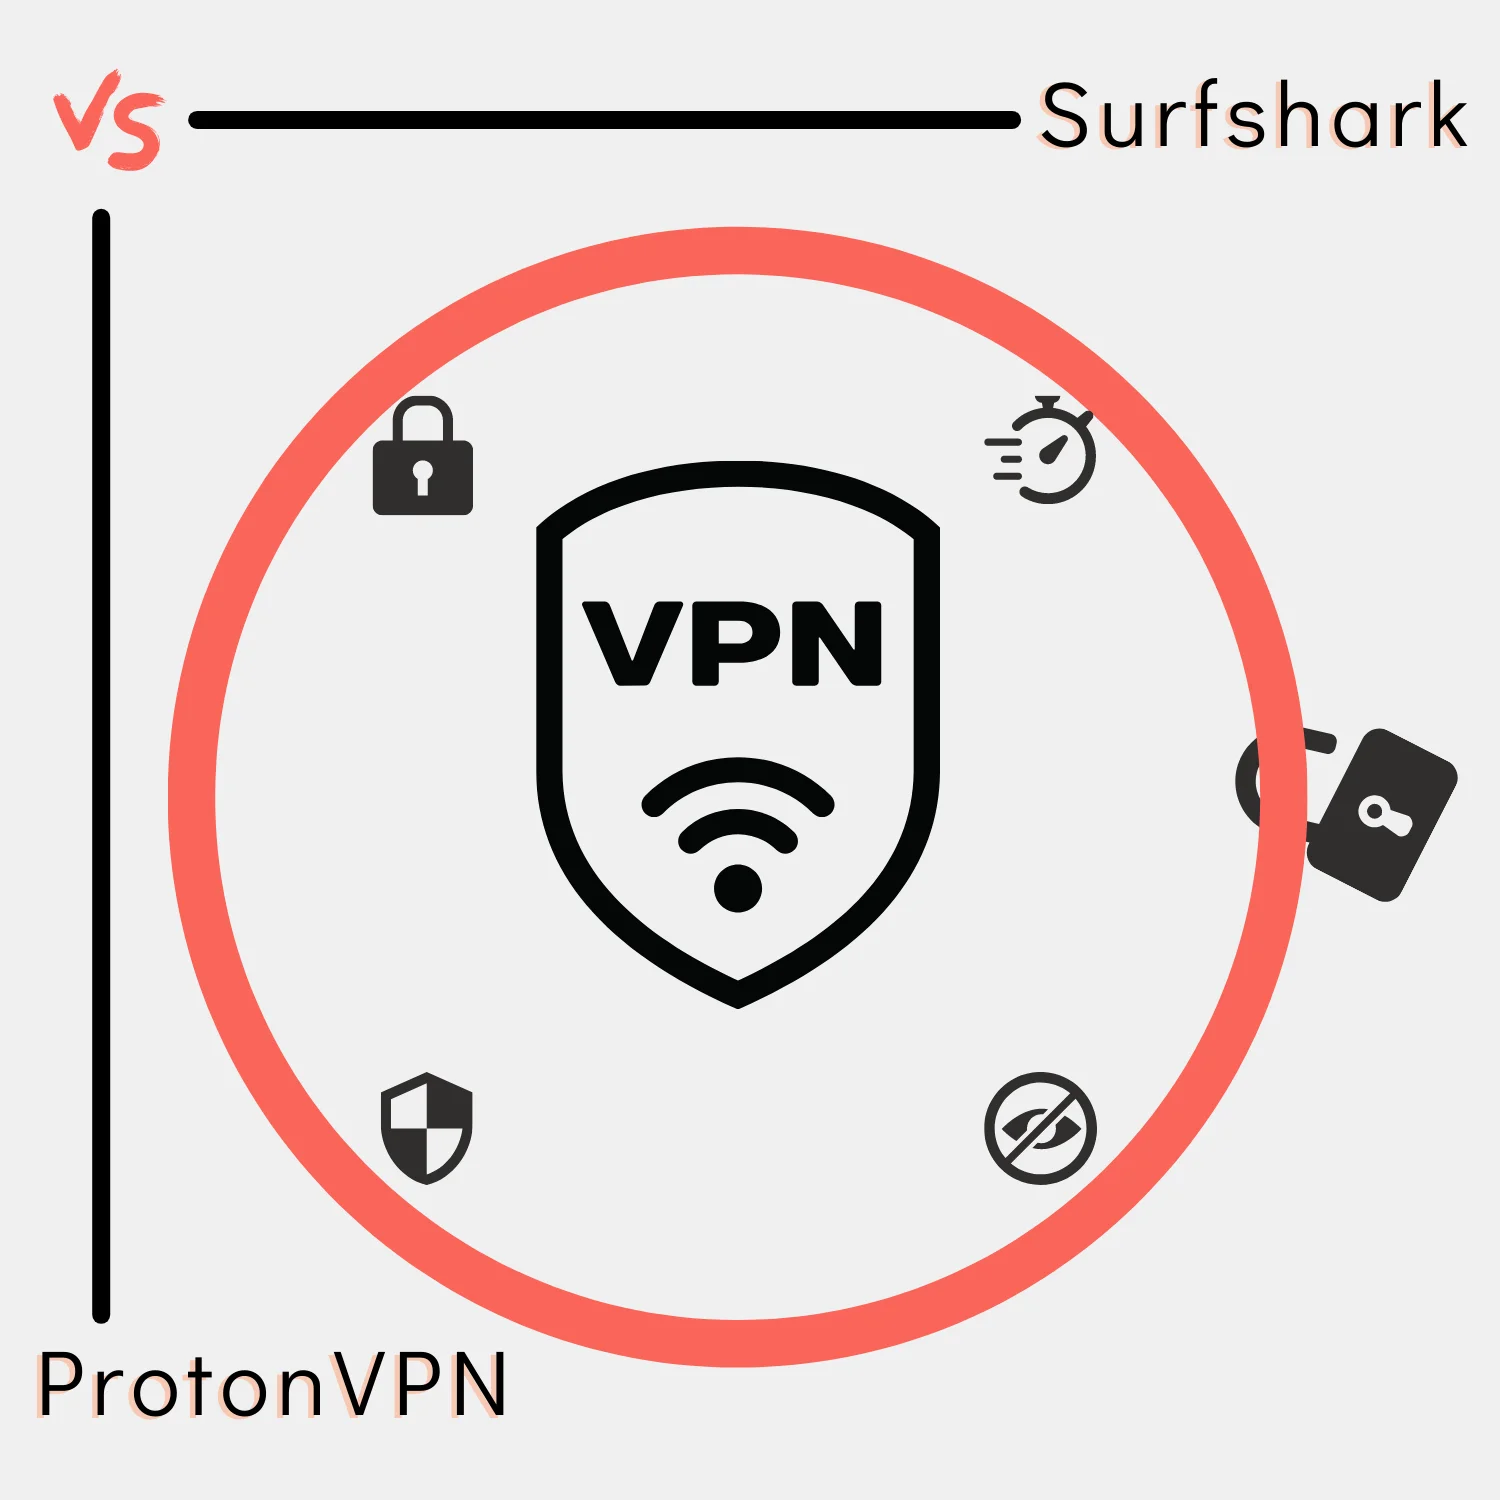 Surfshark vs ProtonVPN